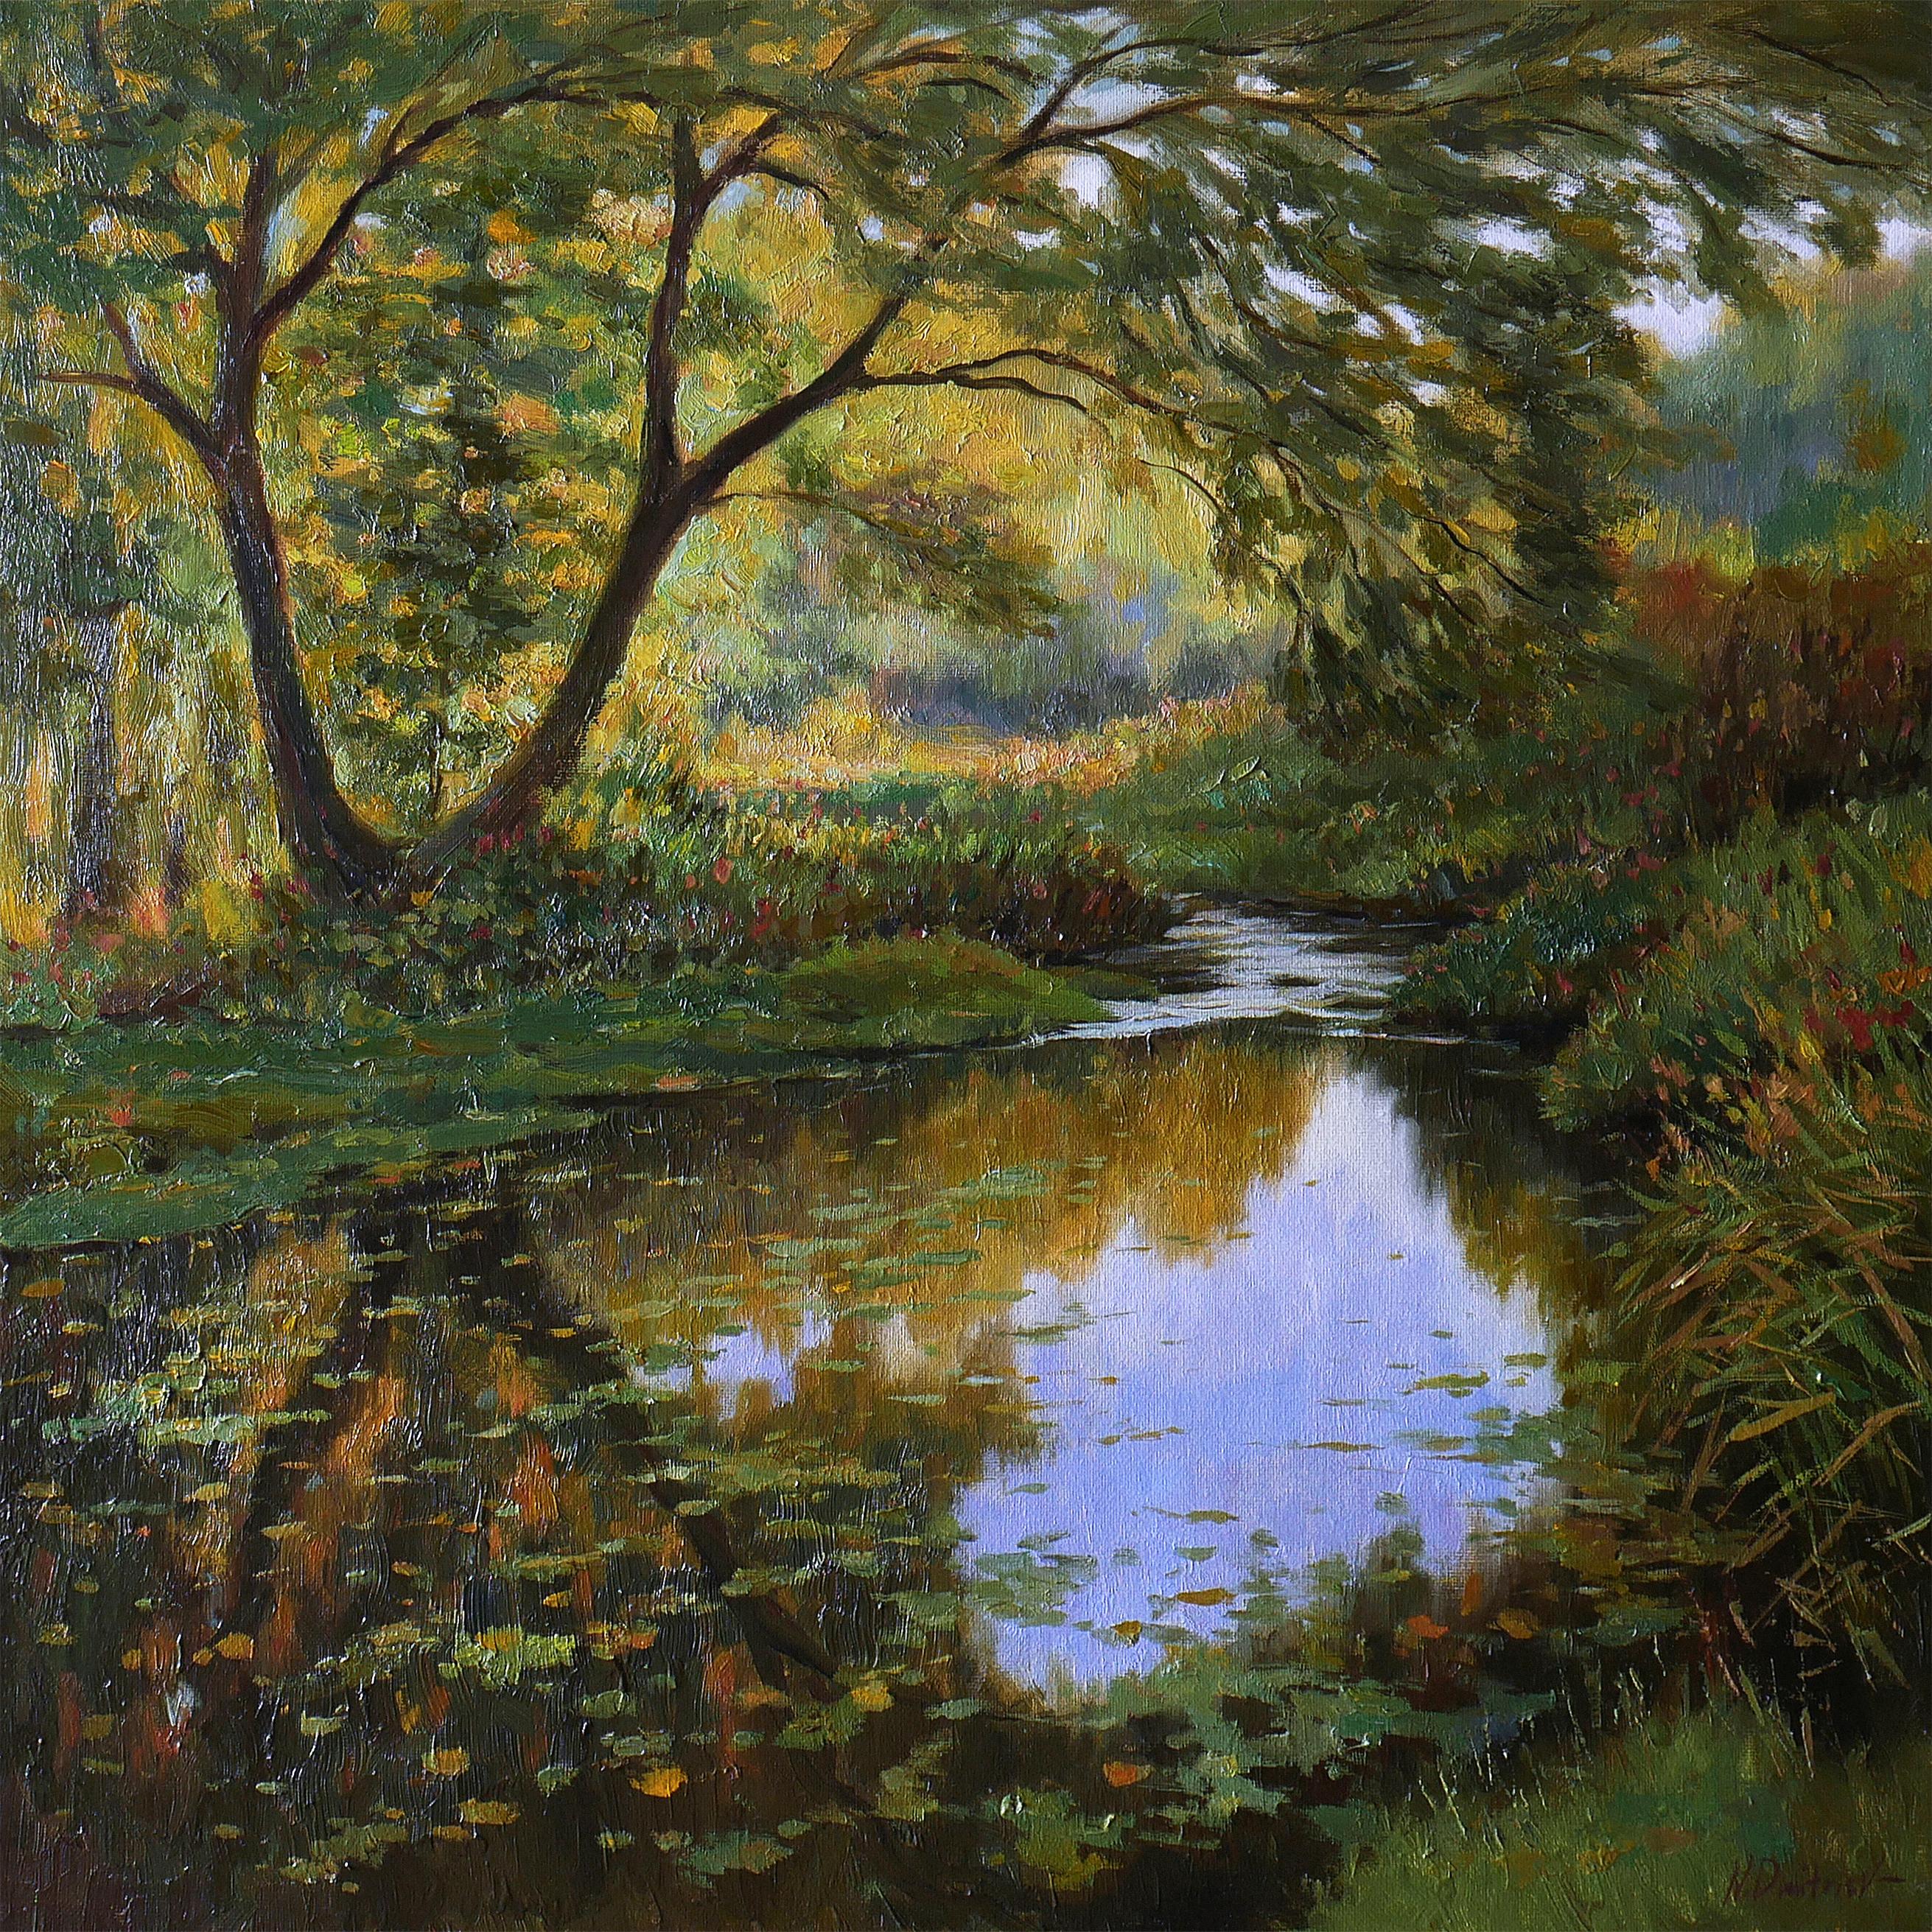 Landscape Painting Nikolay Dmitriev - Mood d'automne - peinture de paysage d'automne